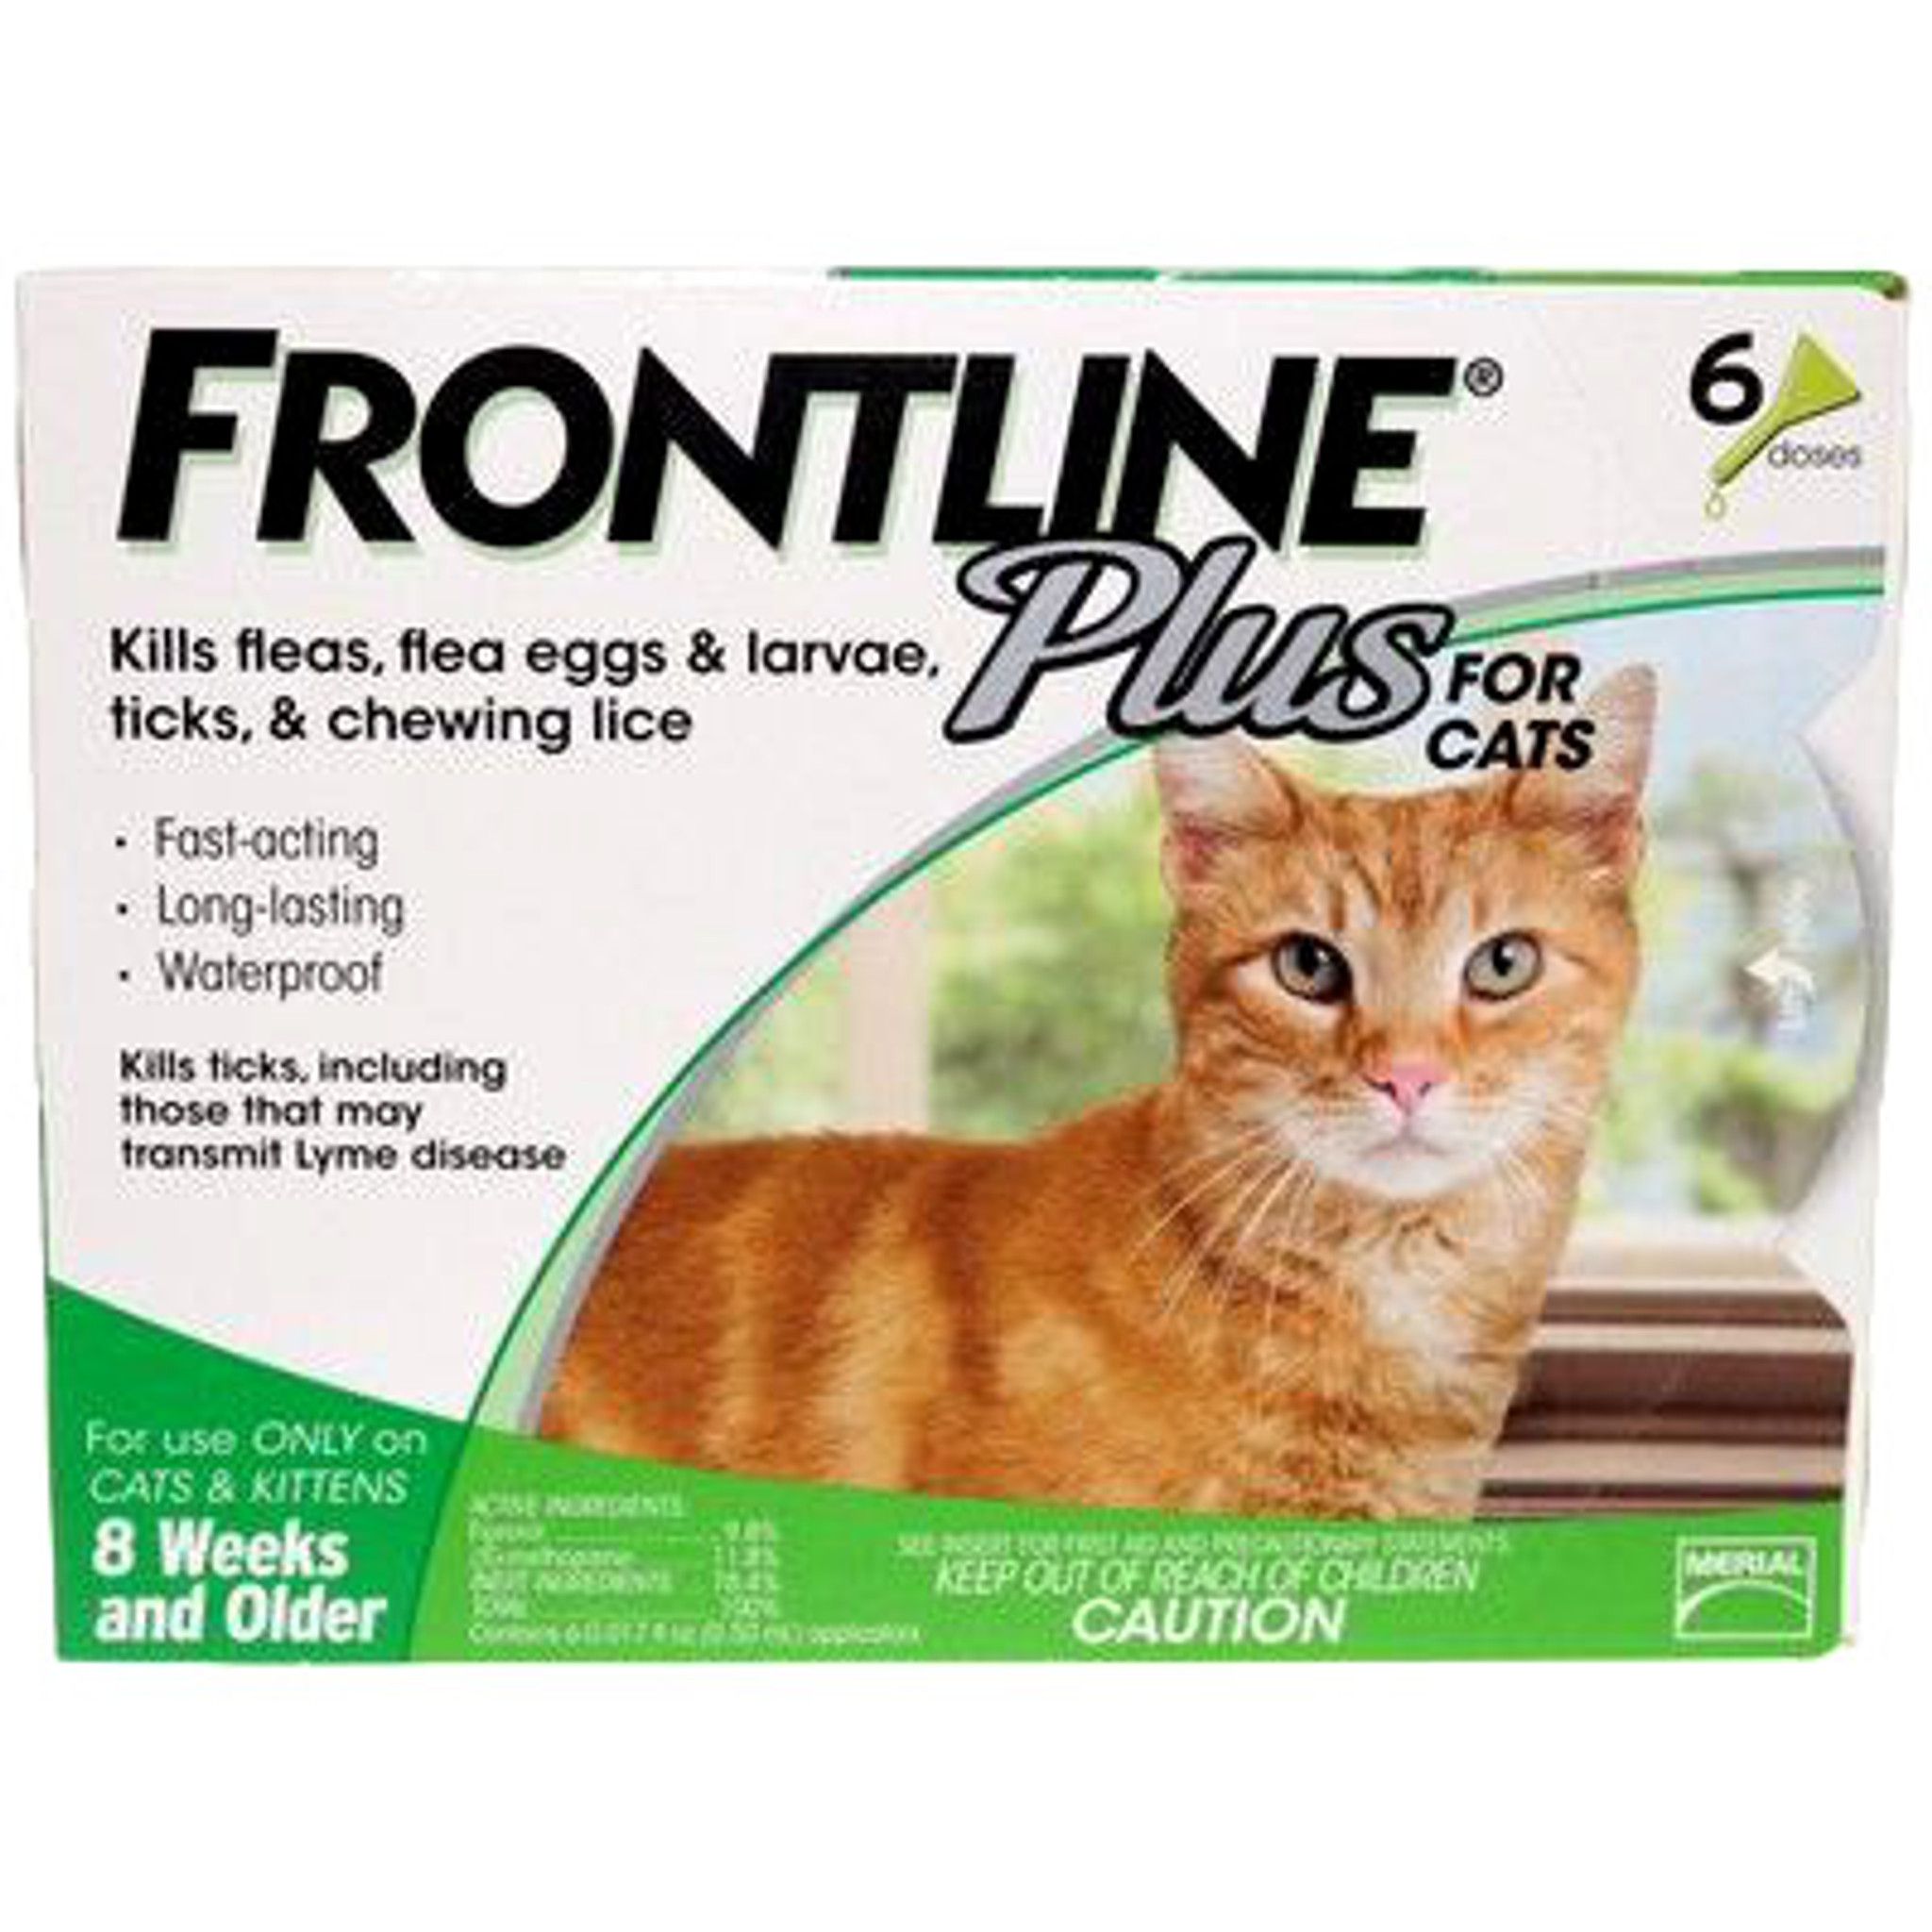 Fitness tint Bedrog Frontline Plus for Cats Green 6 Doses | Sierra Pet Meds